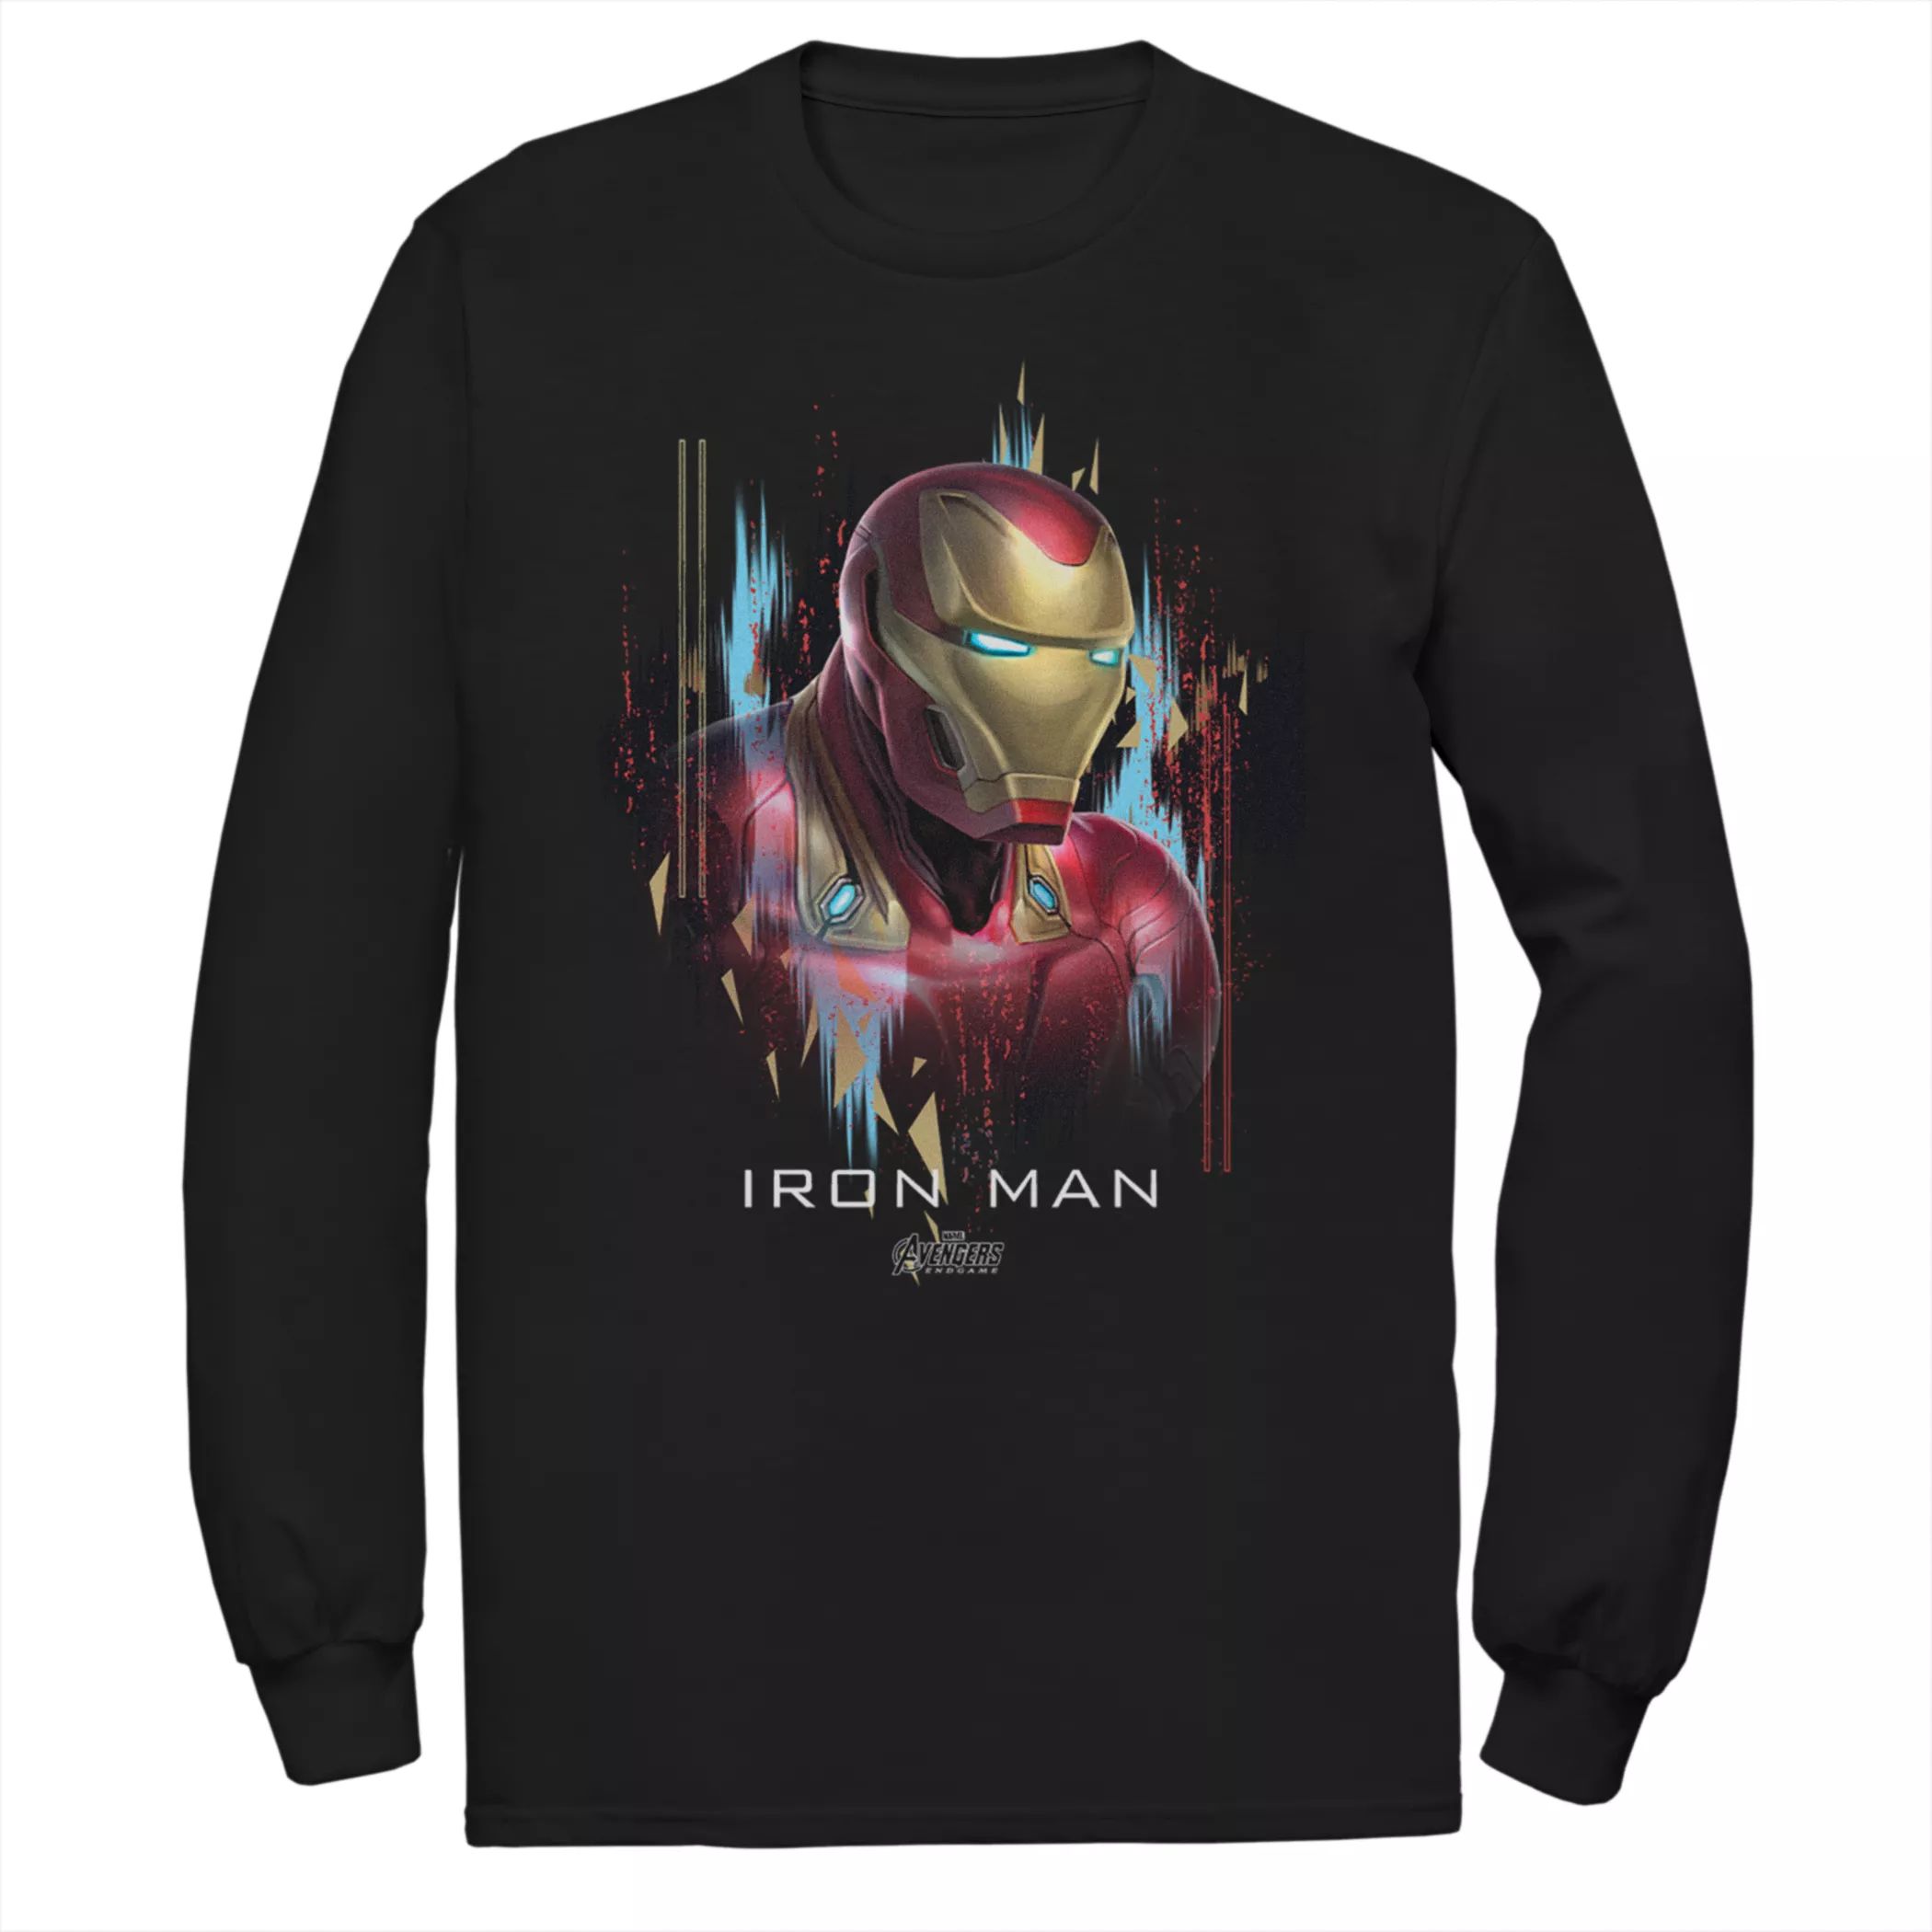 Мужская футболка с портретом Marvel Avengers Iron Man Licensed Character